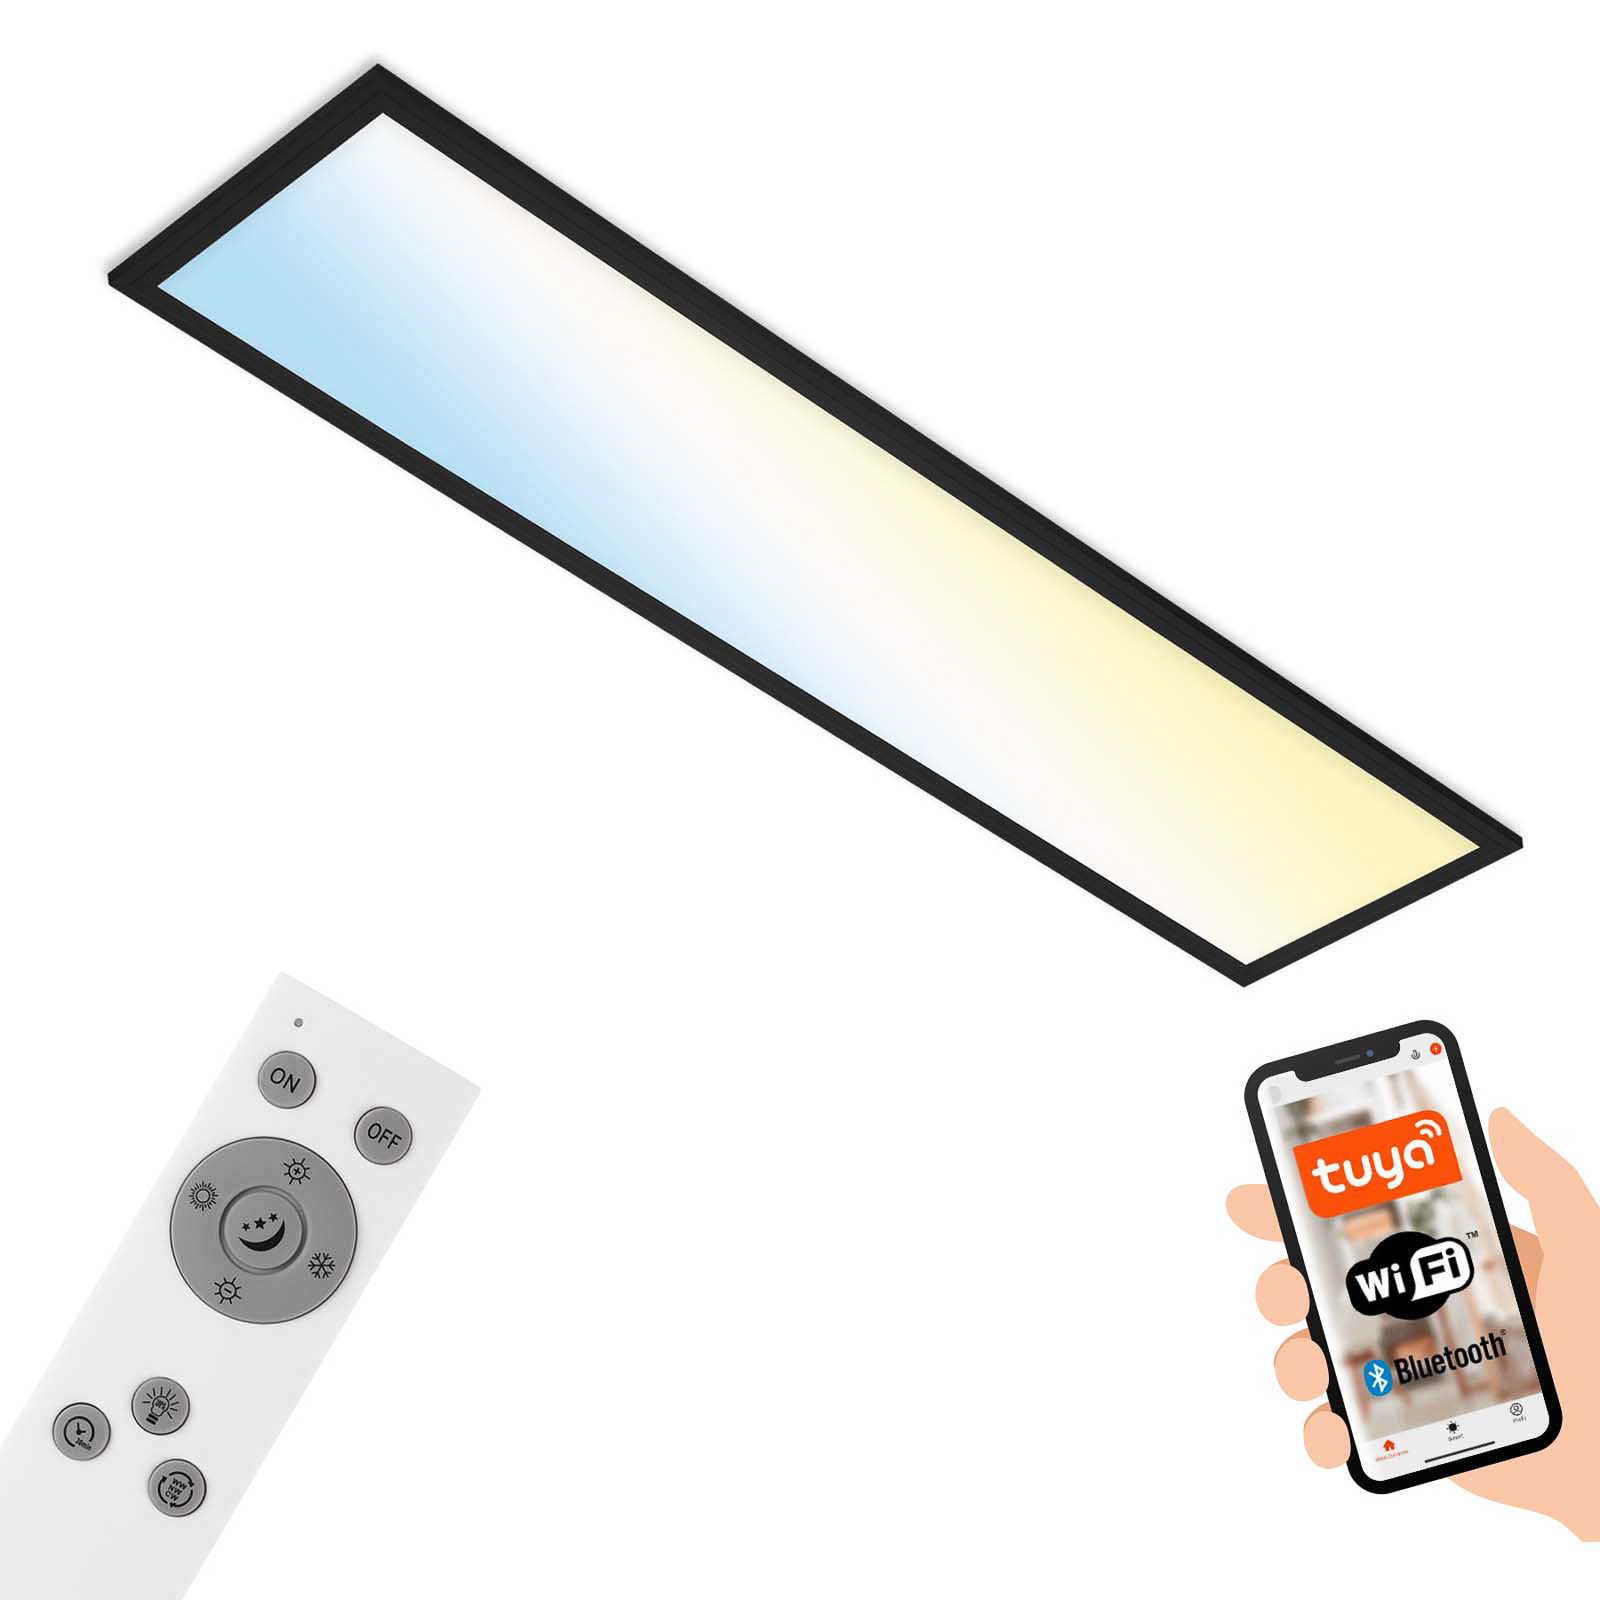 LED-taklampa Piatto S WiFi Bluetooth CCT